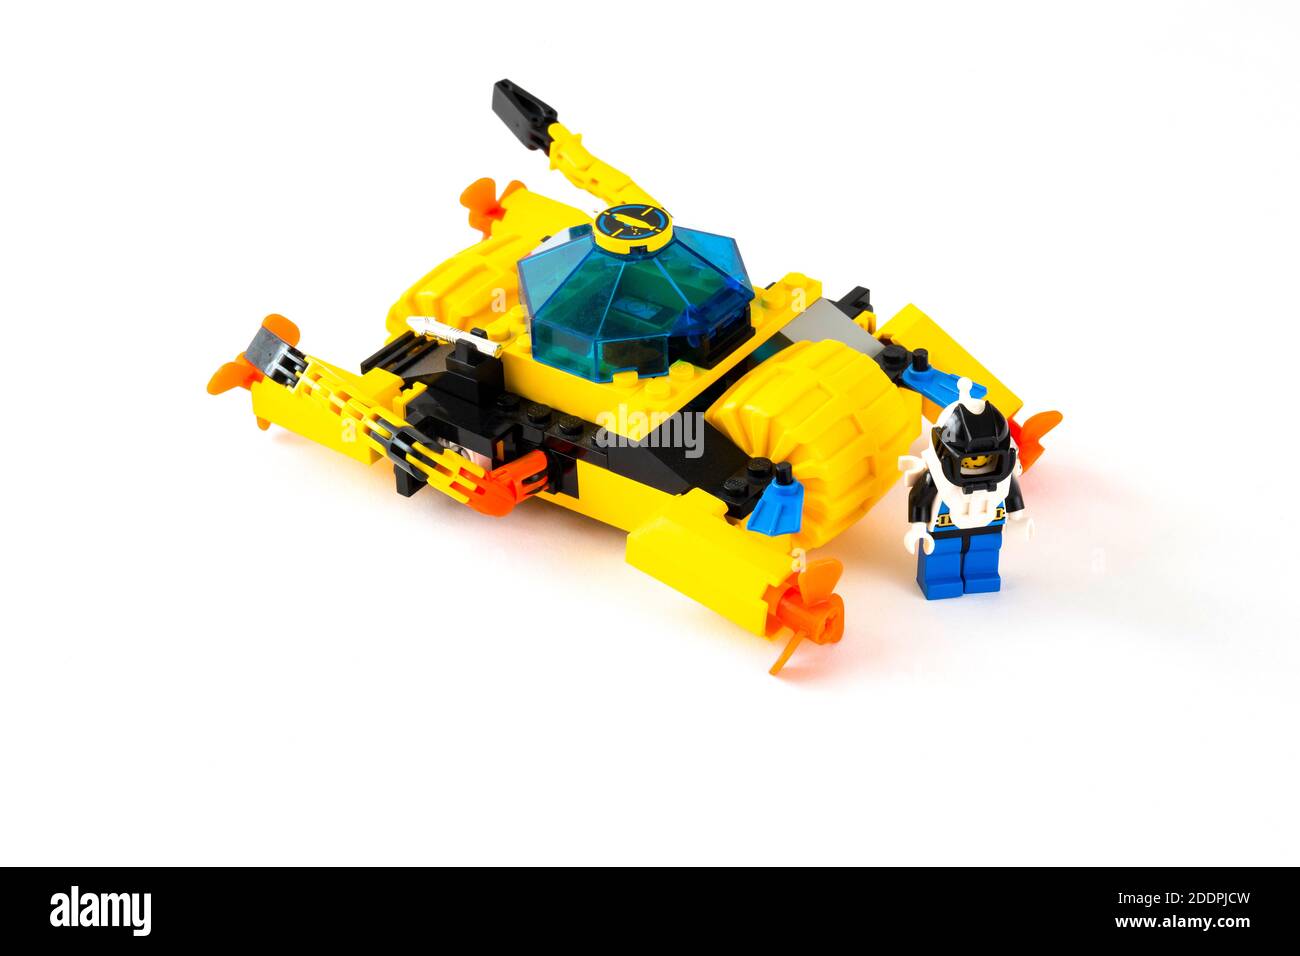 Lego set 6145 Crystal Crawler from 1996 Aquanauts range Stock Photo - Alamy